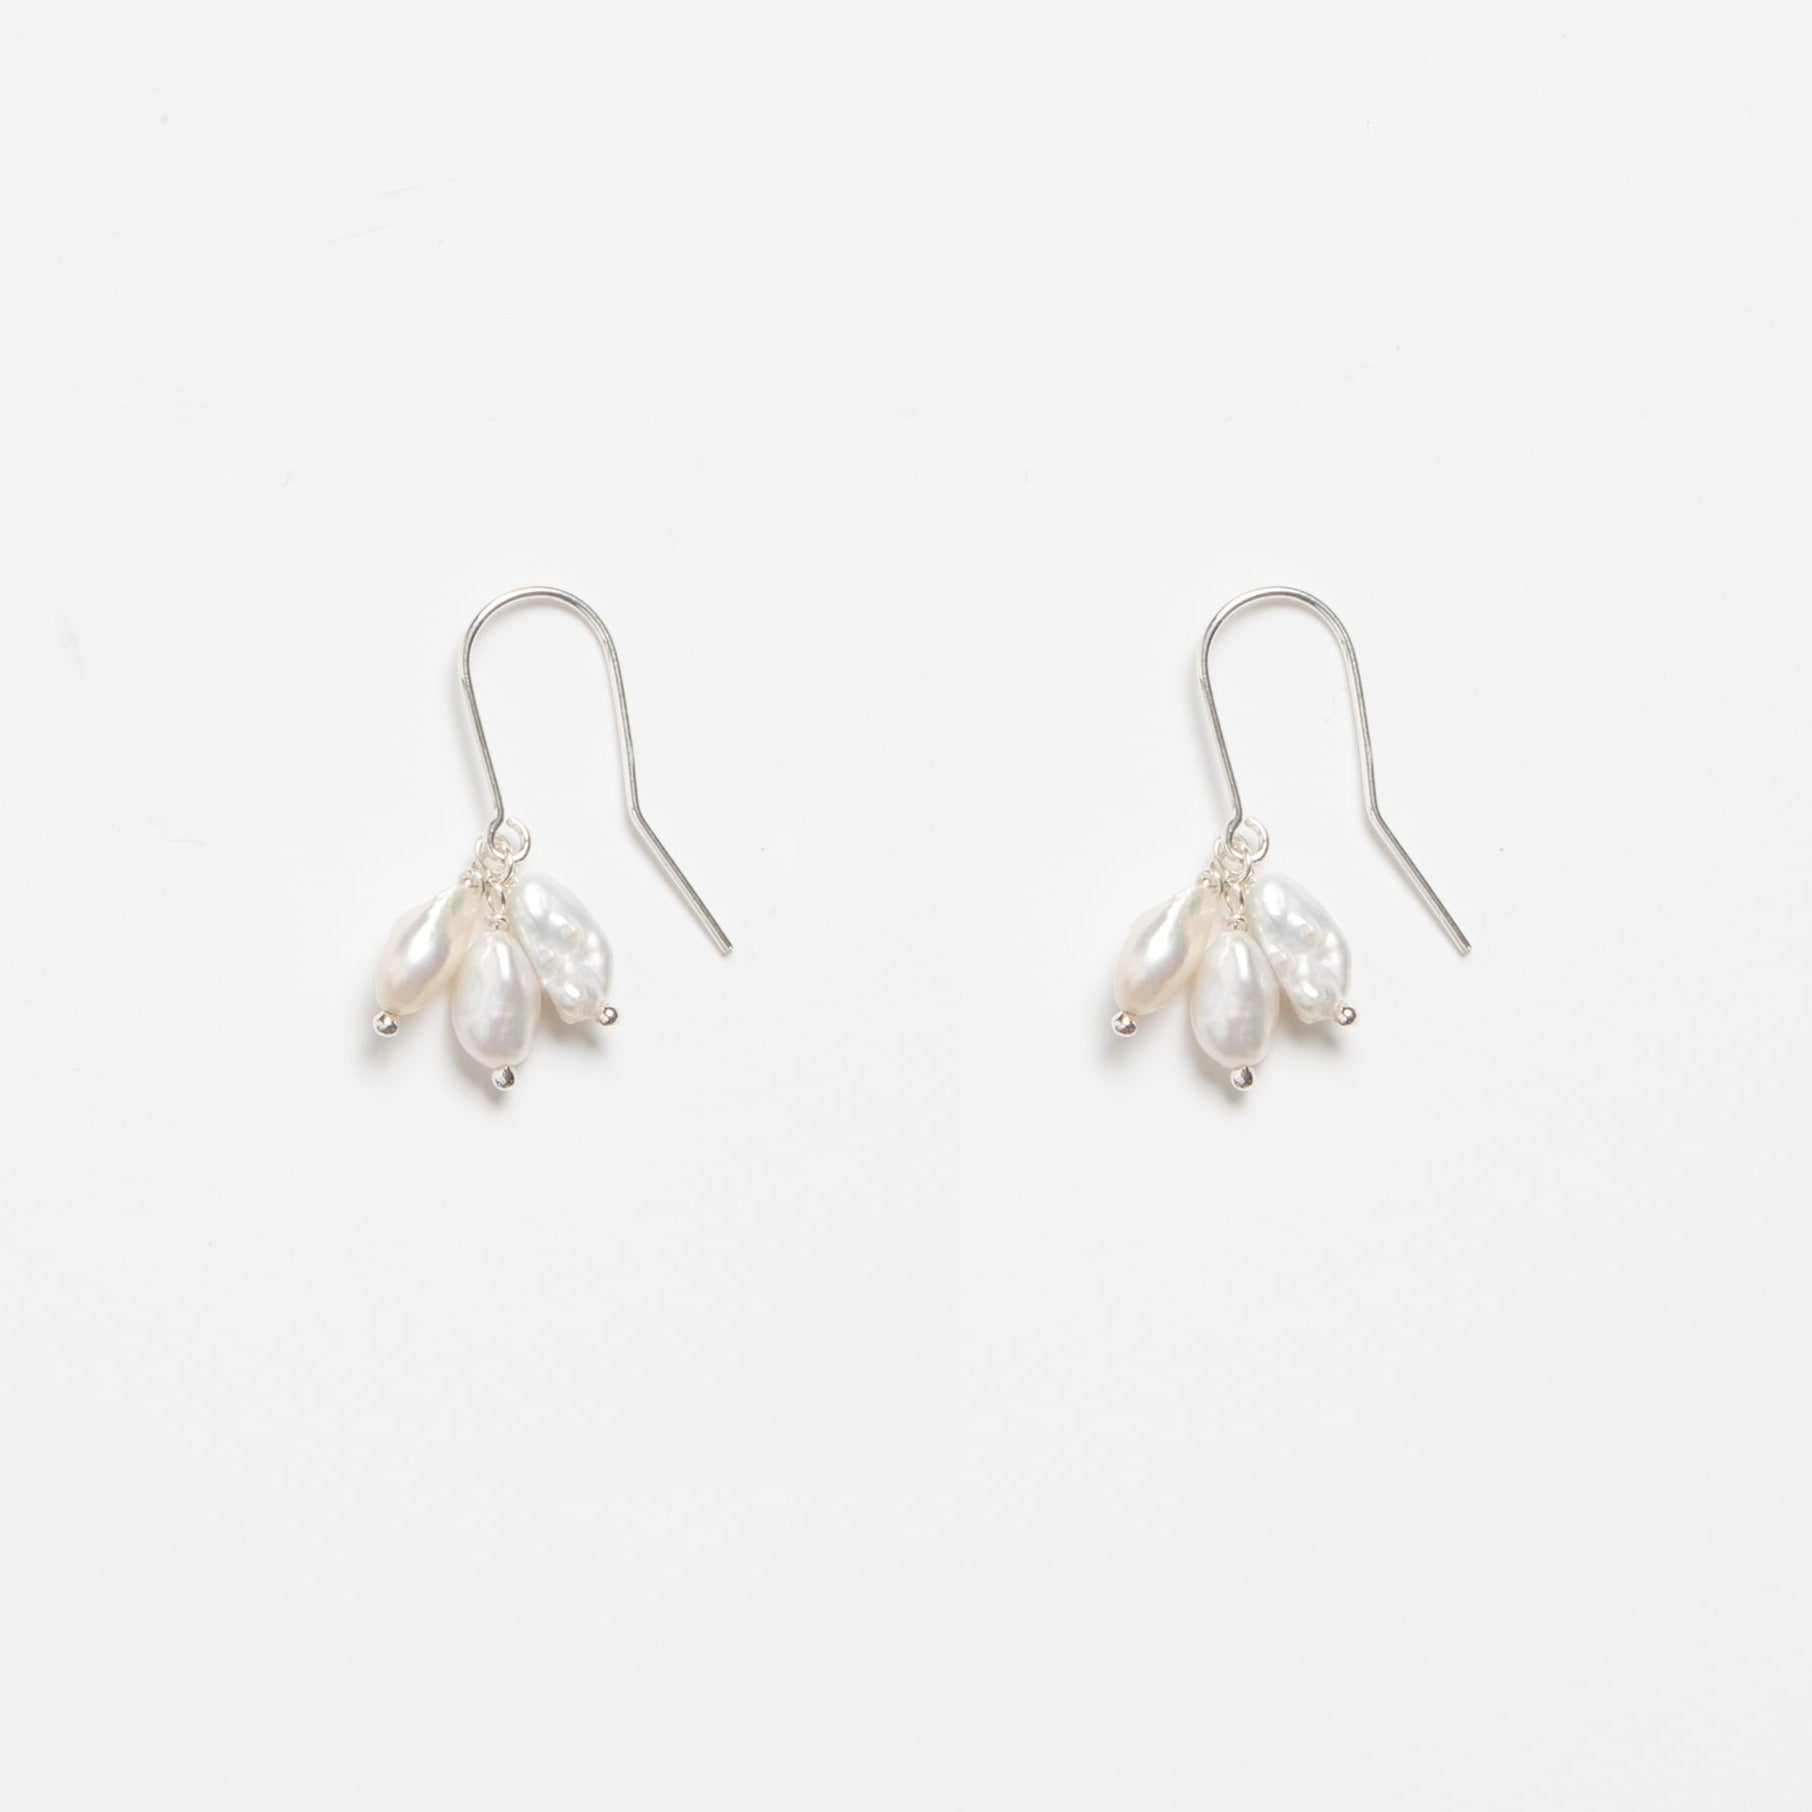 Blooming Pearl Silver Earrings